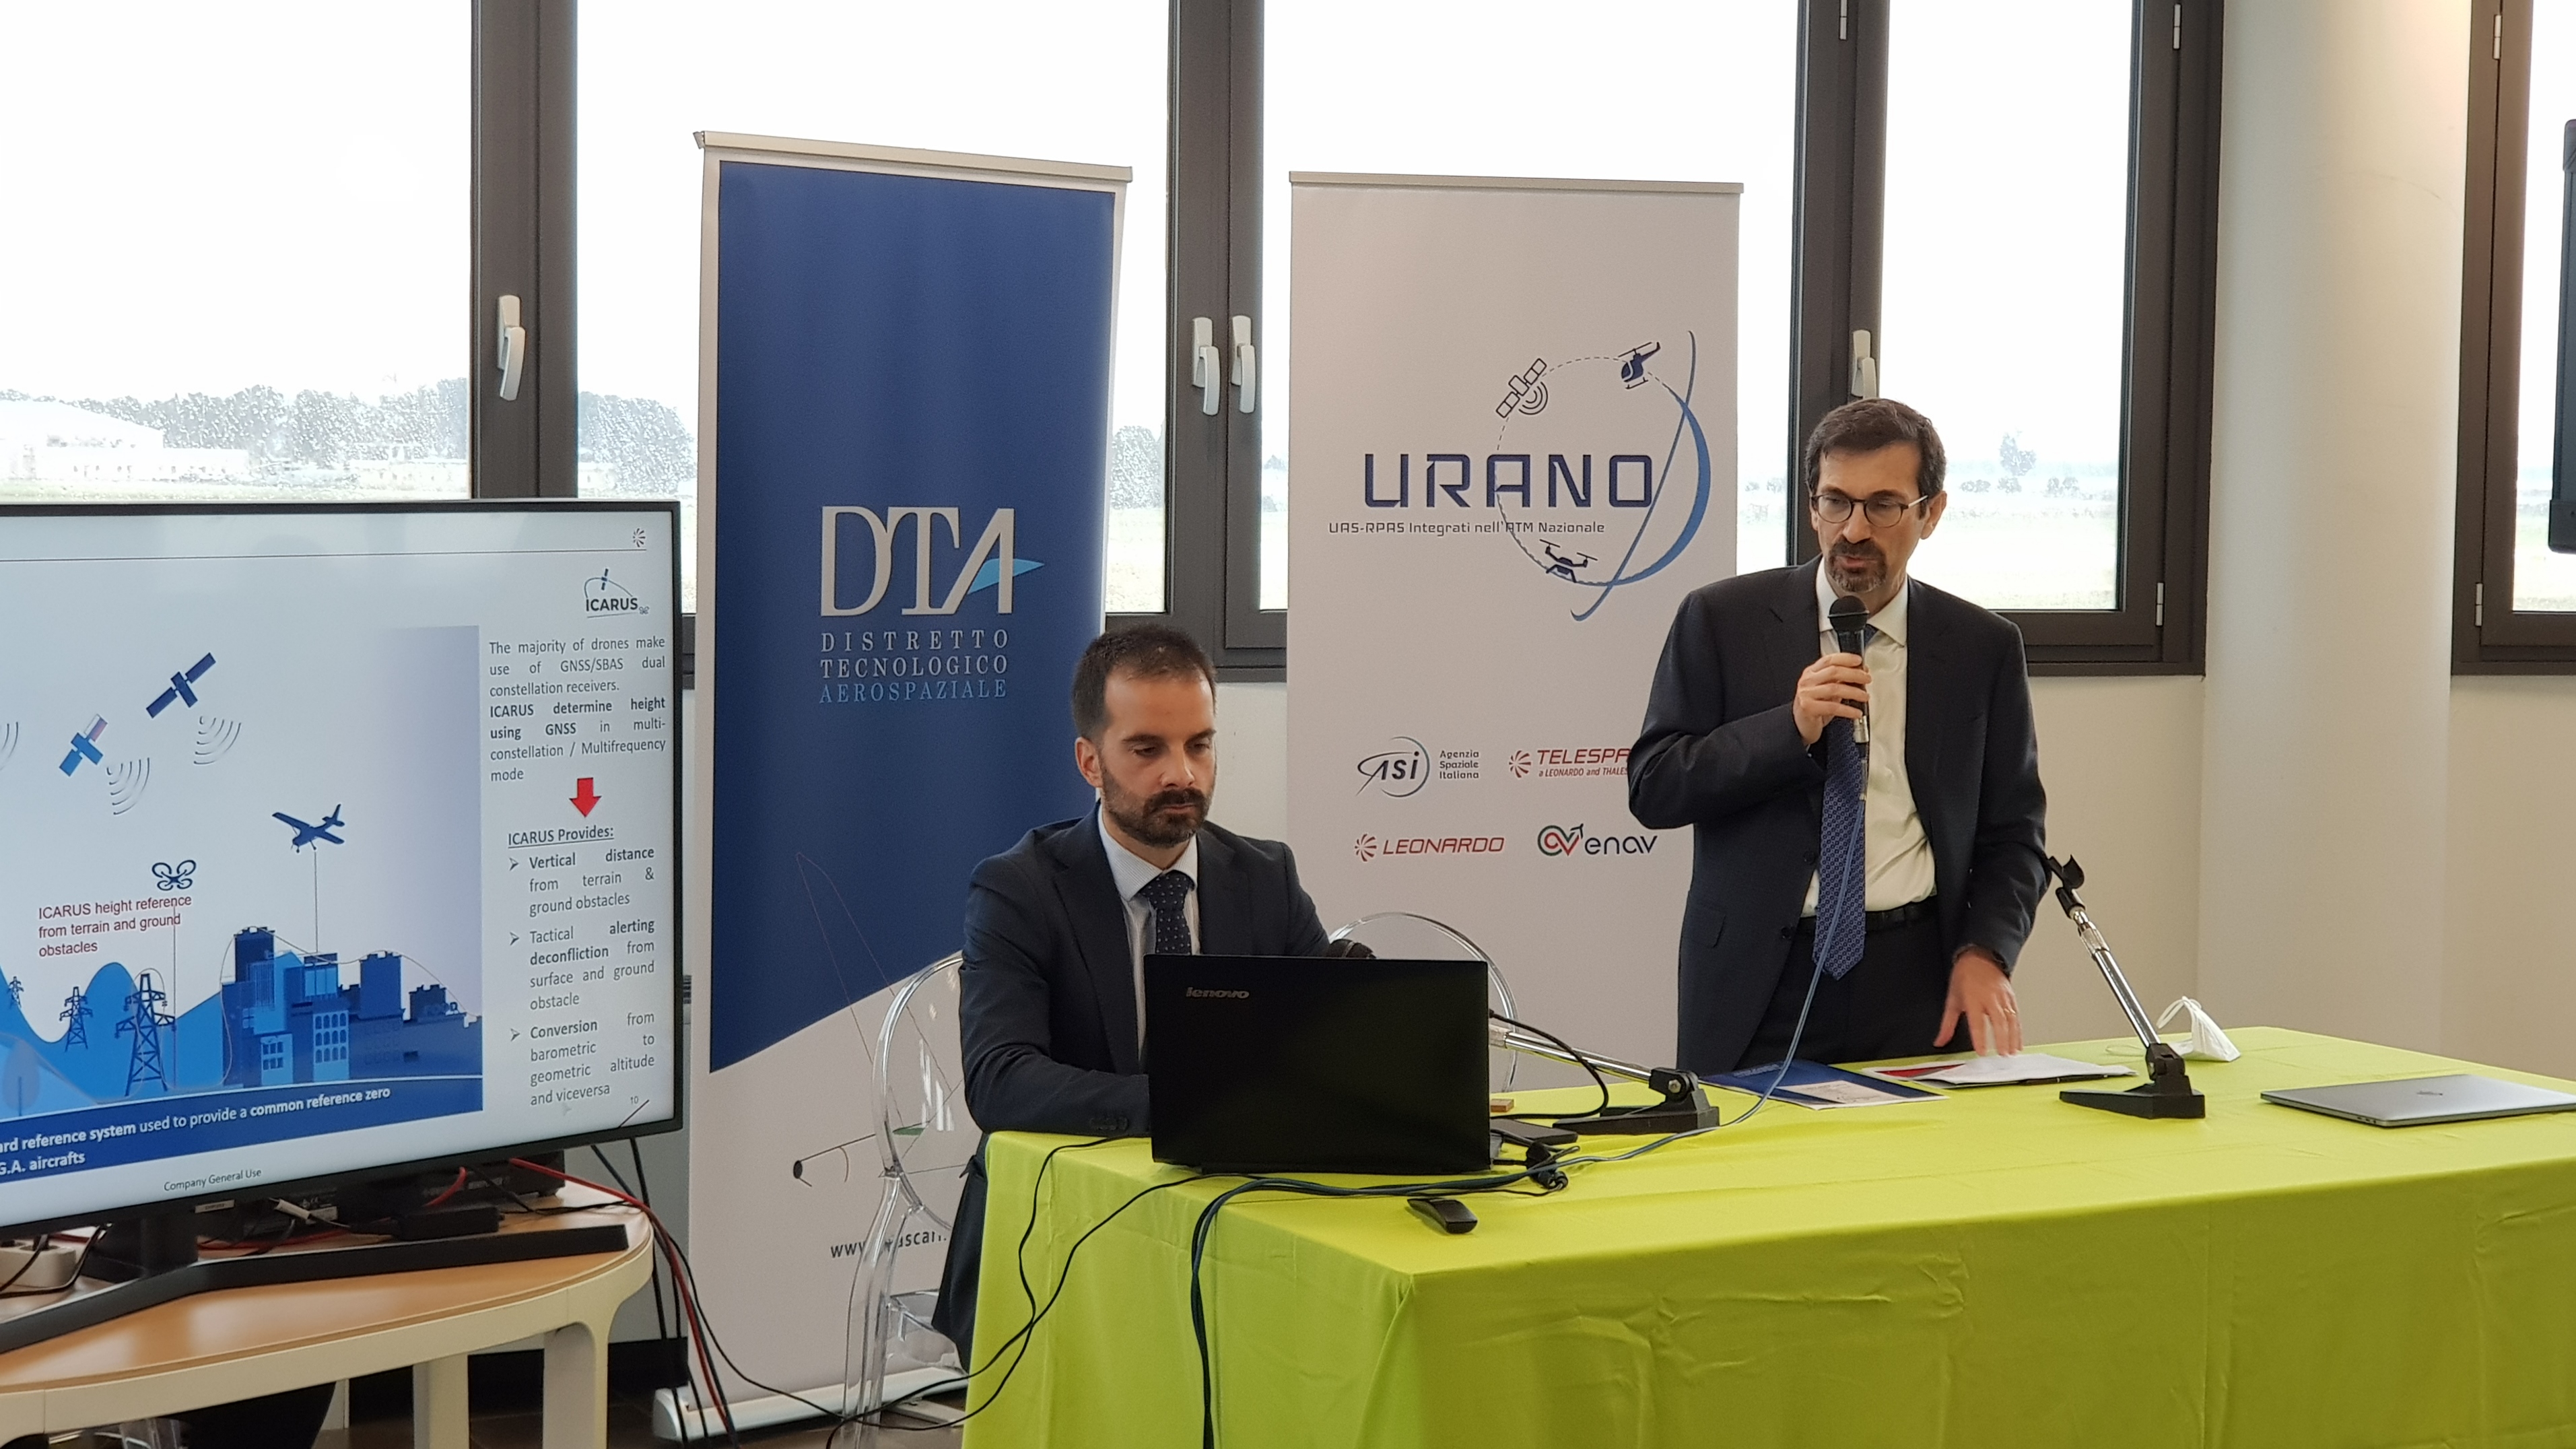 Presentazione del progetto URANO: integrare i droni nello spaizo aereo nazionale. Credits: Telespazio